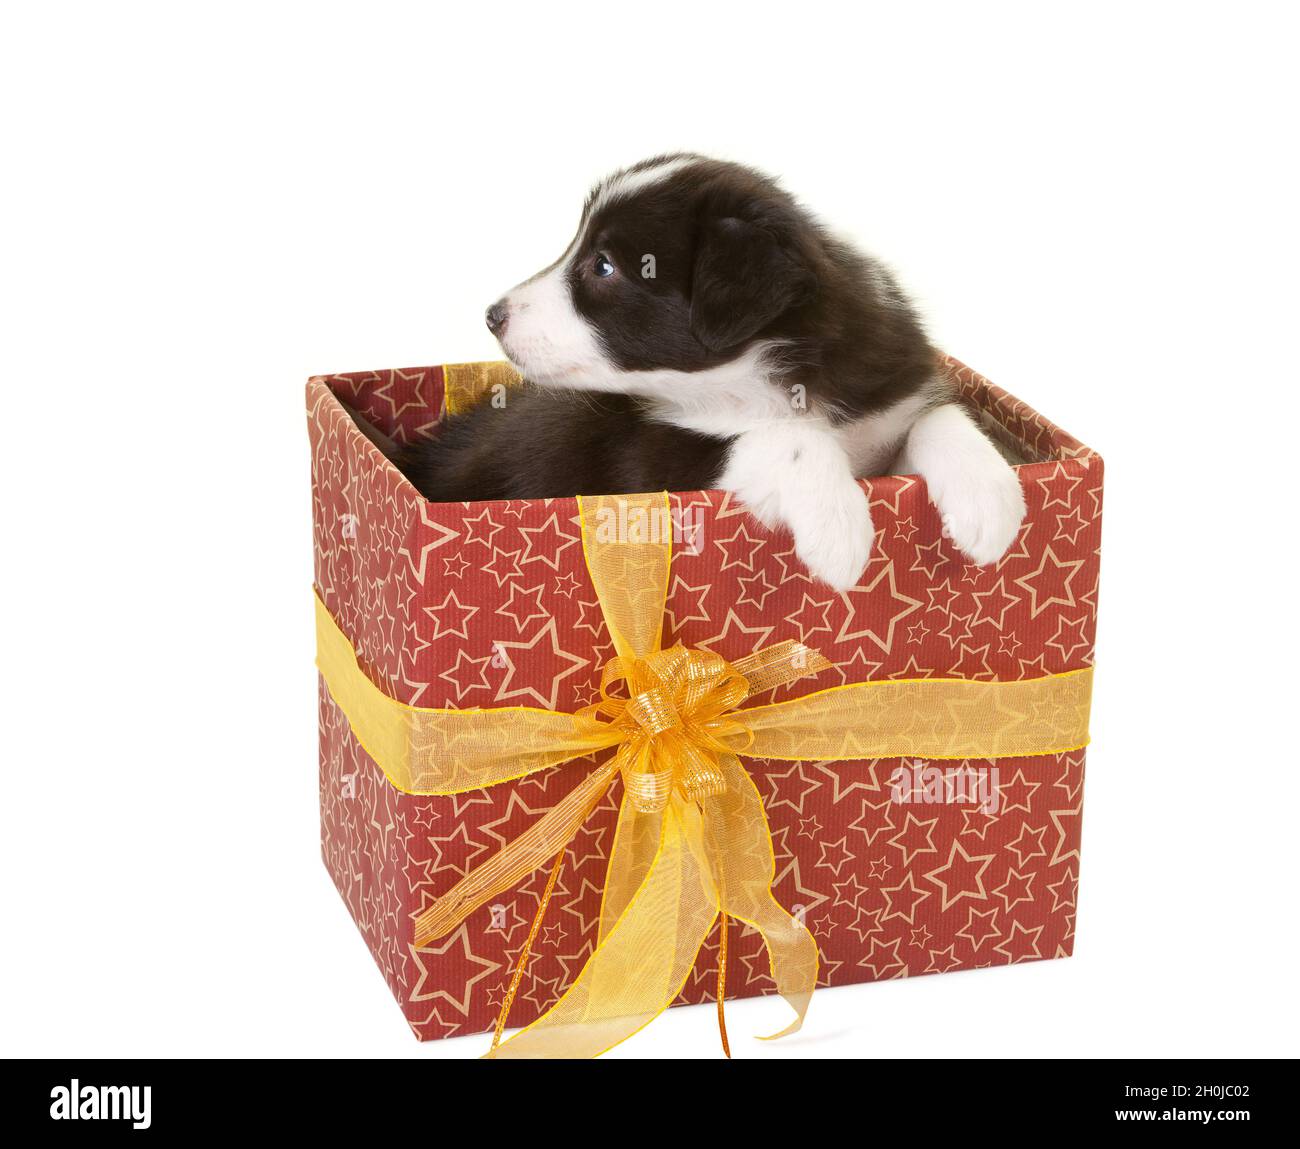 Carino cucciolo piccolo bordo collie seduto in un regalo avvolto Foto stock  - Alamy